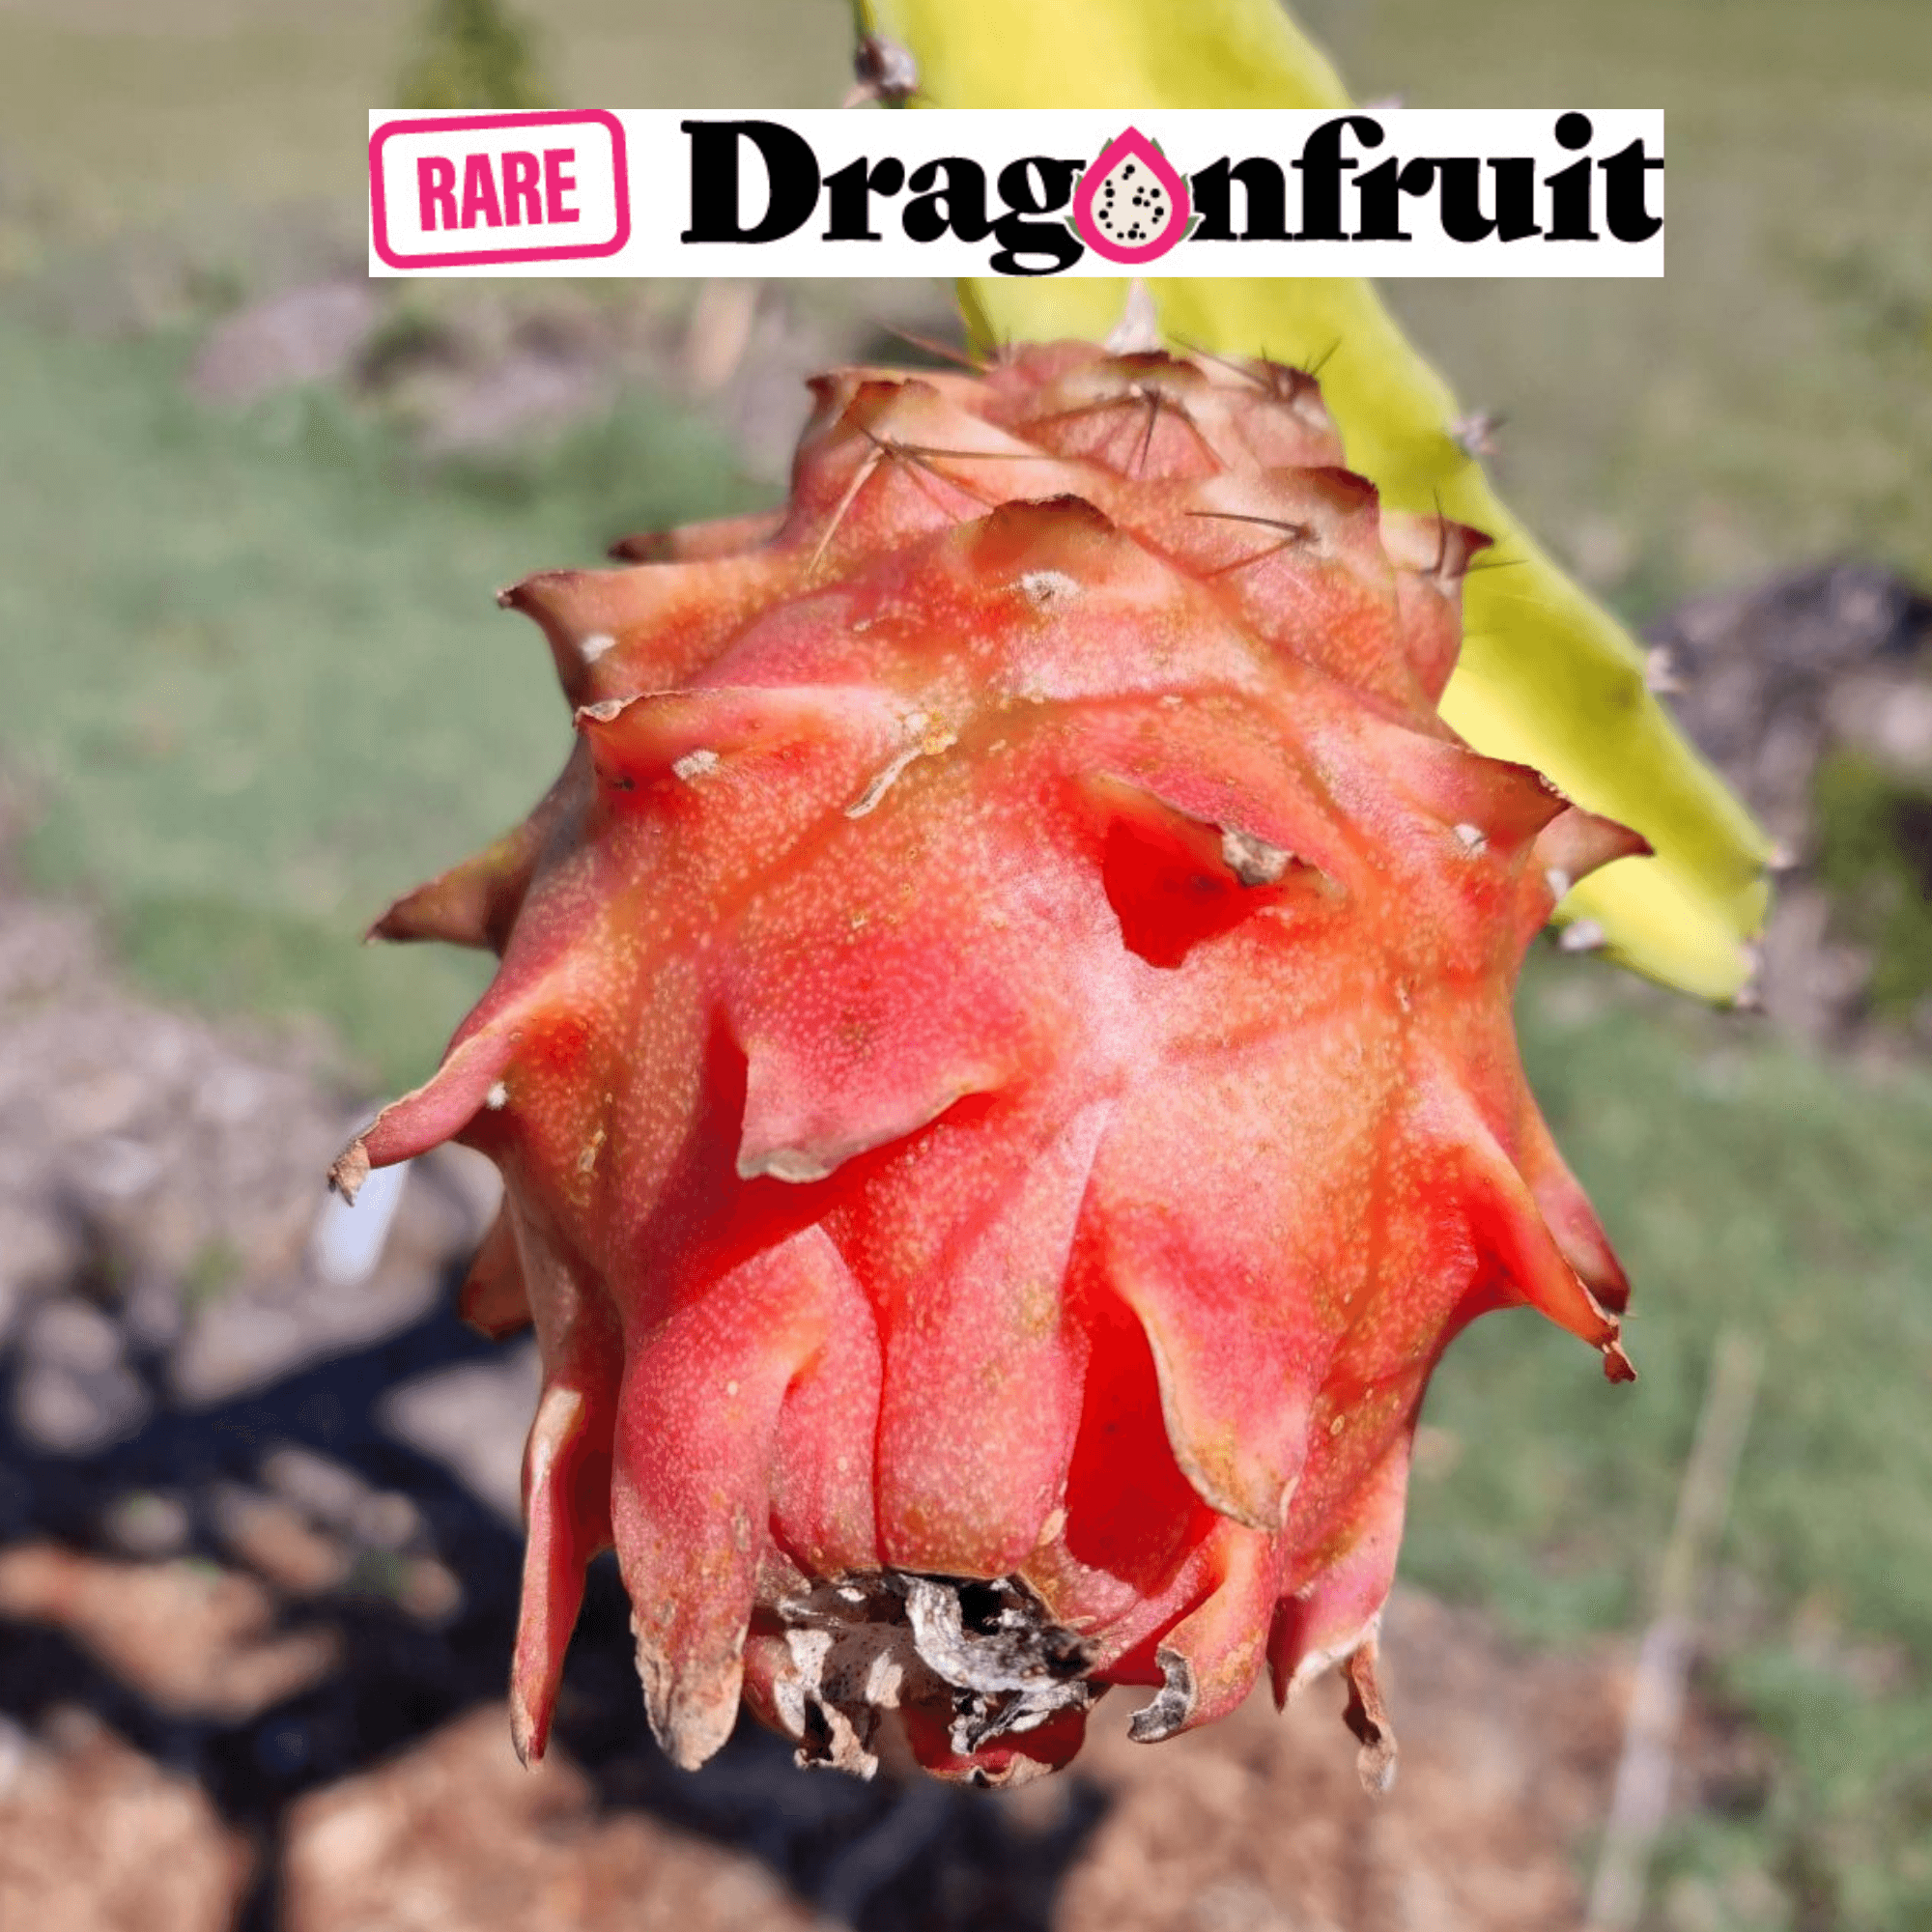 Purple Megalanthus- Colombian dragon fruit H. megalanthus. - Rare Dragon Fruit